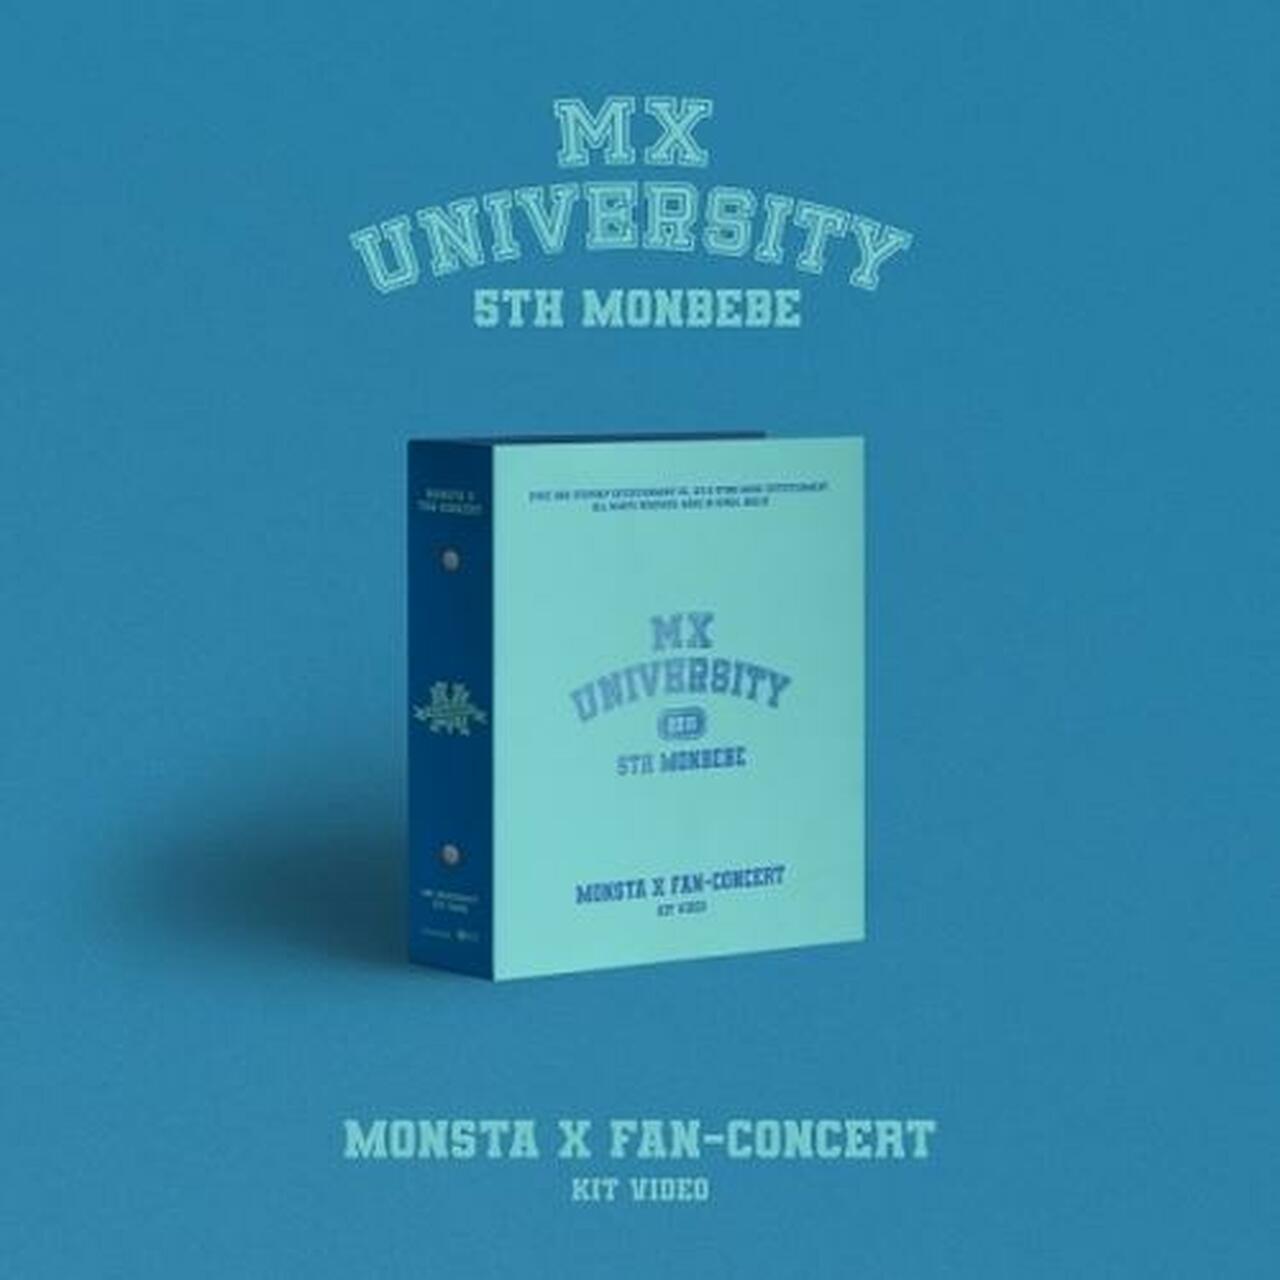 MONSTA X Official 2021 Fan-Concert [MX University] DVD